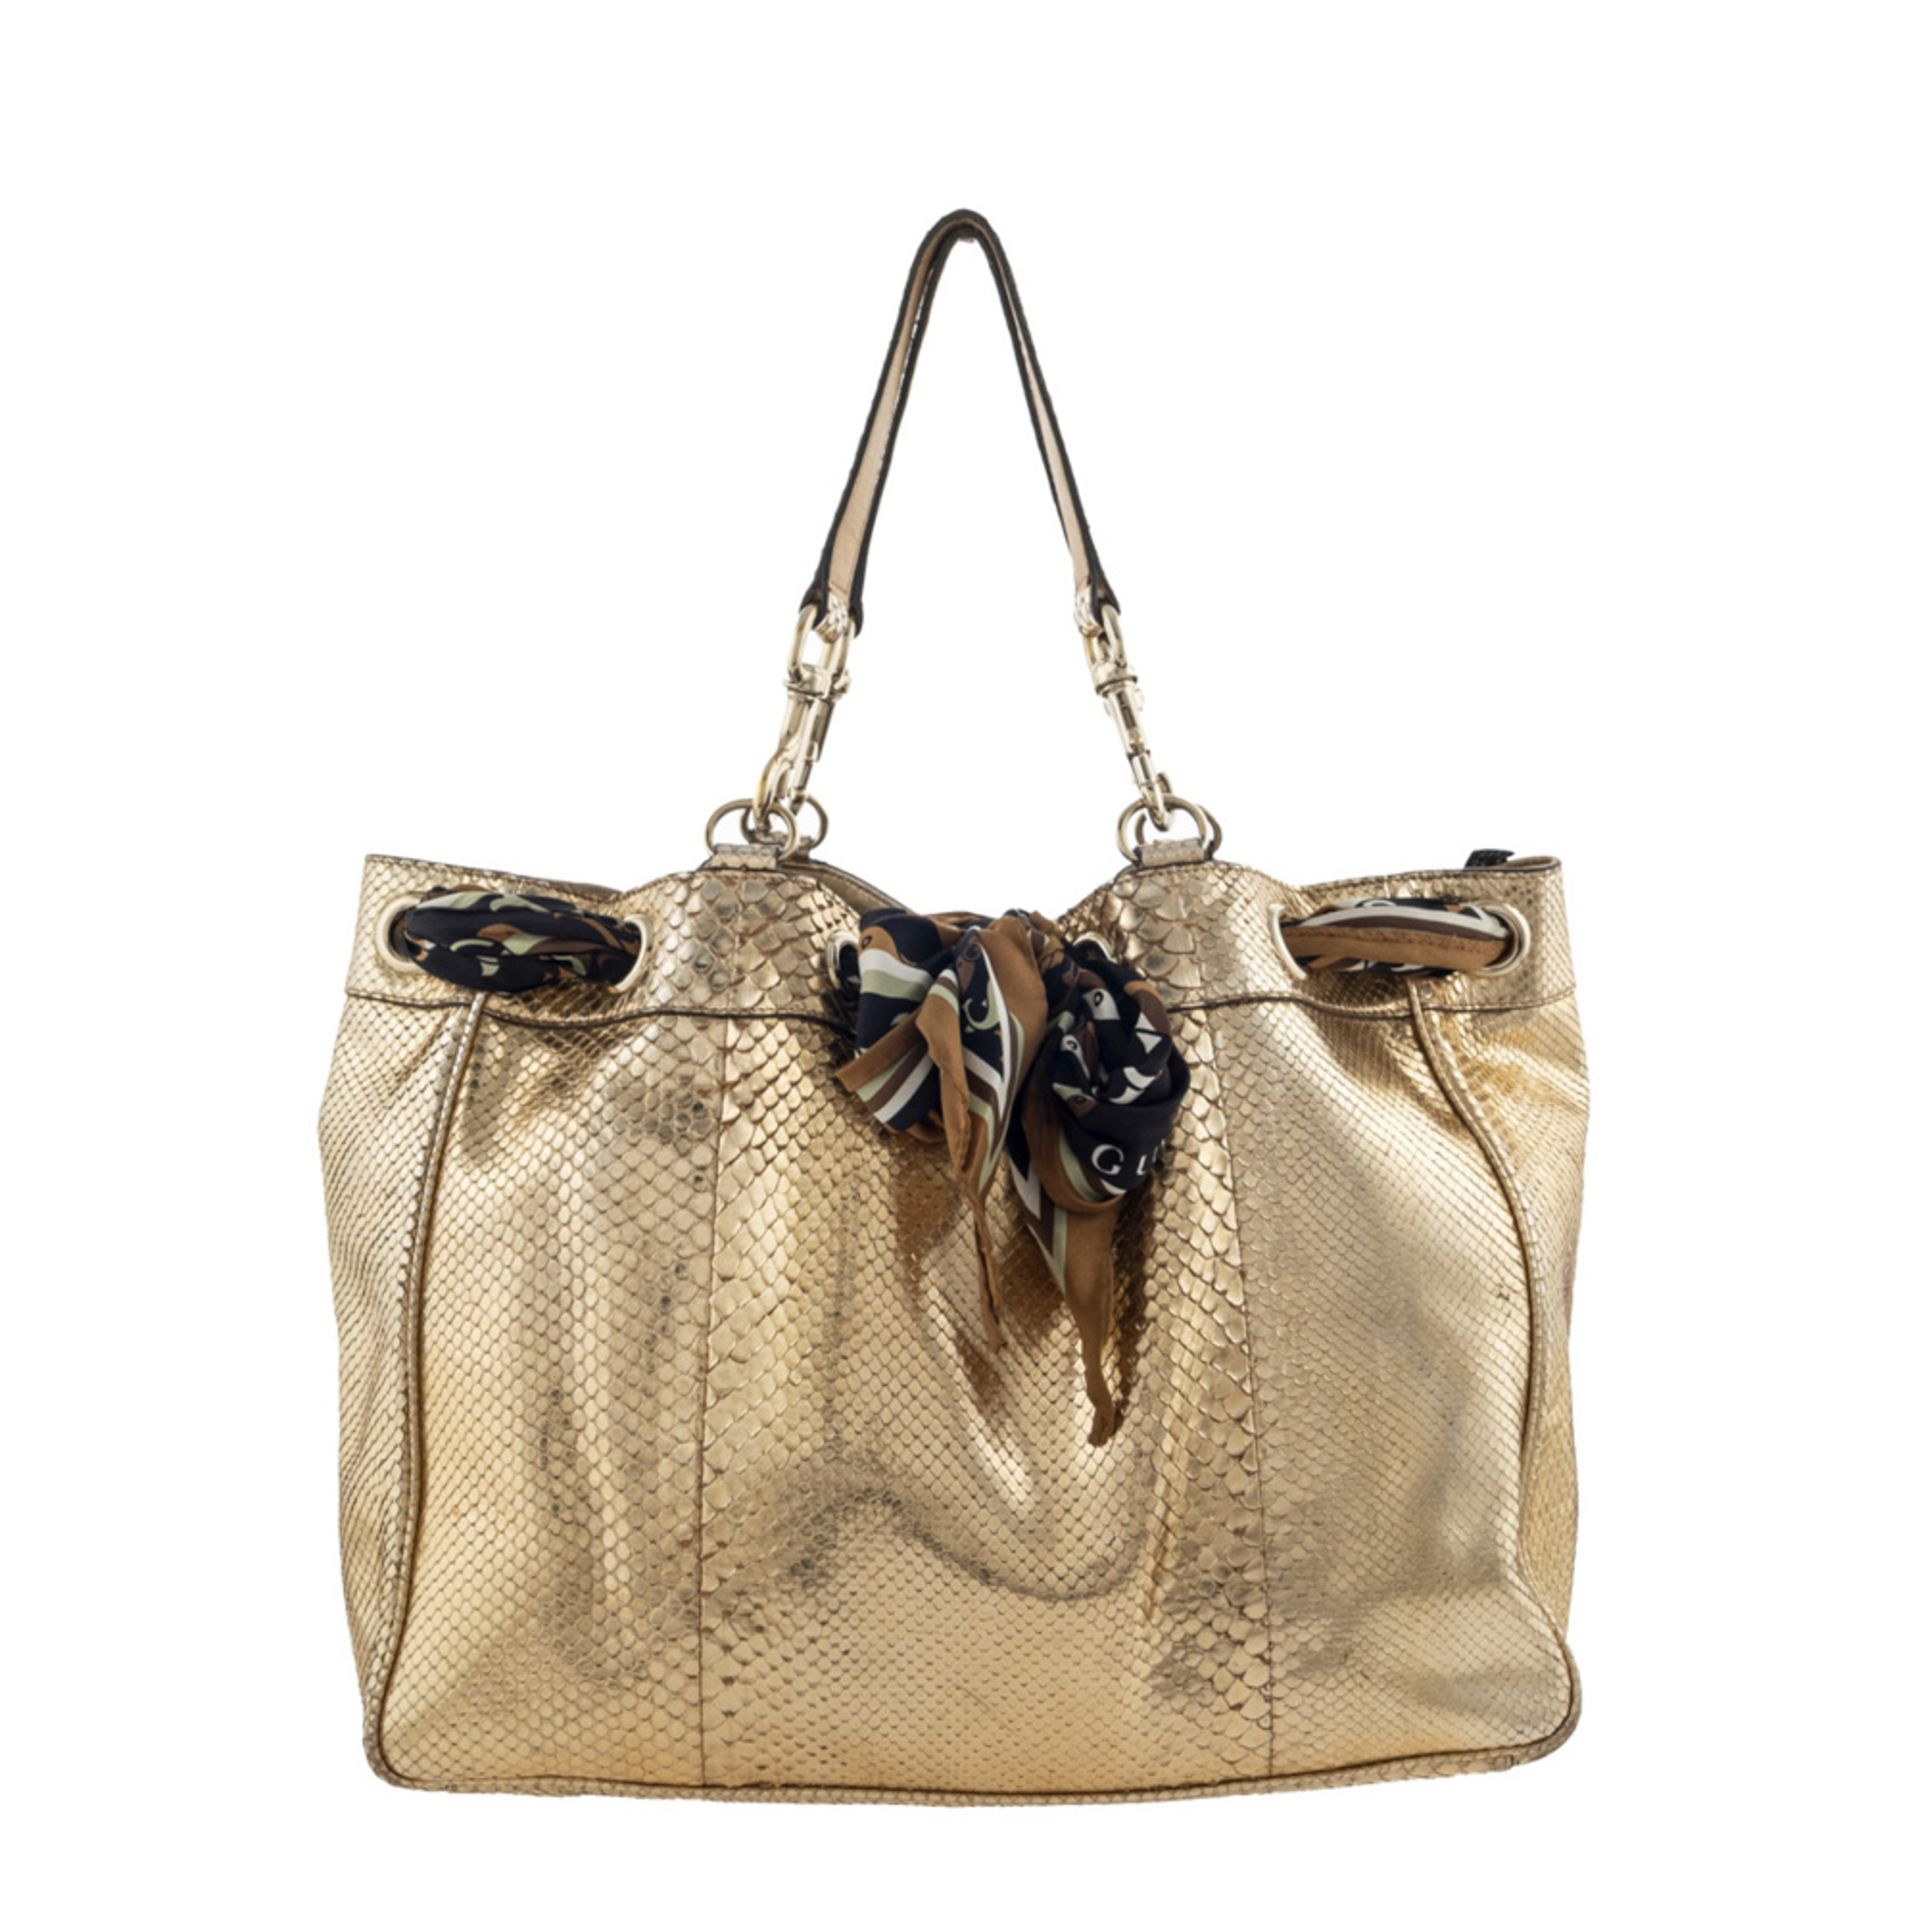 Gucci Positano collection, vintage handbag